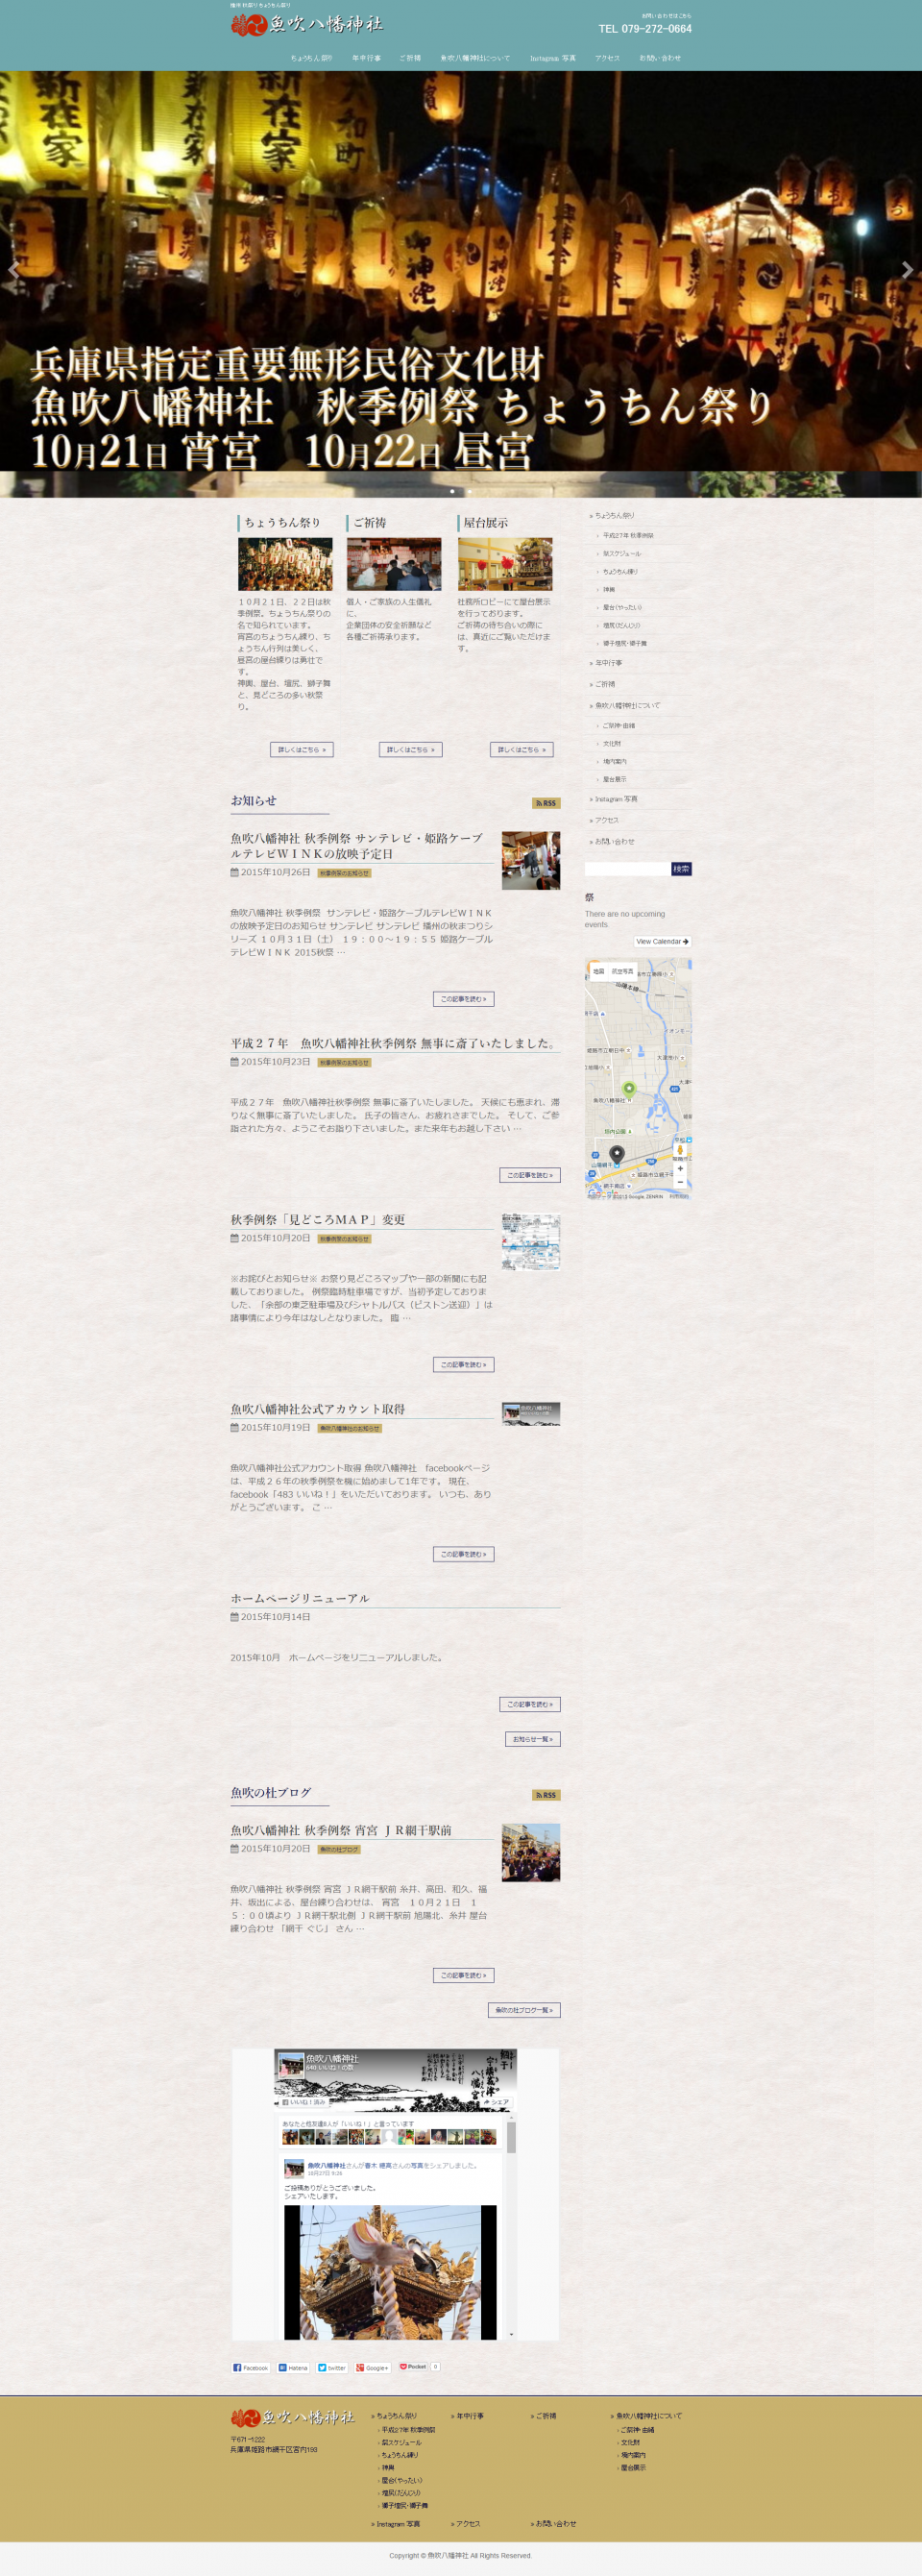 FireShot Screen Capture #002 - '姫路市 魚吹八幡神社 Usuki Hachiman Jinjya' - usukihachiman_or_jp